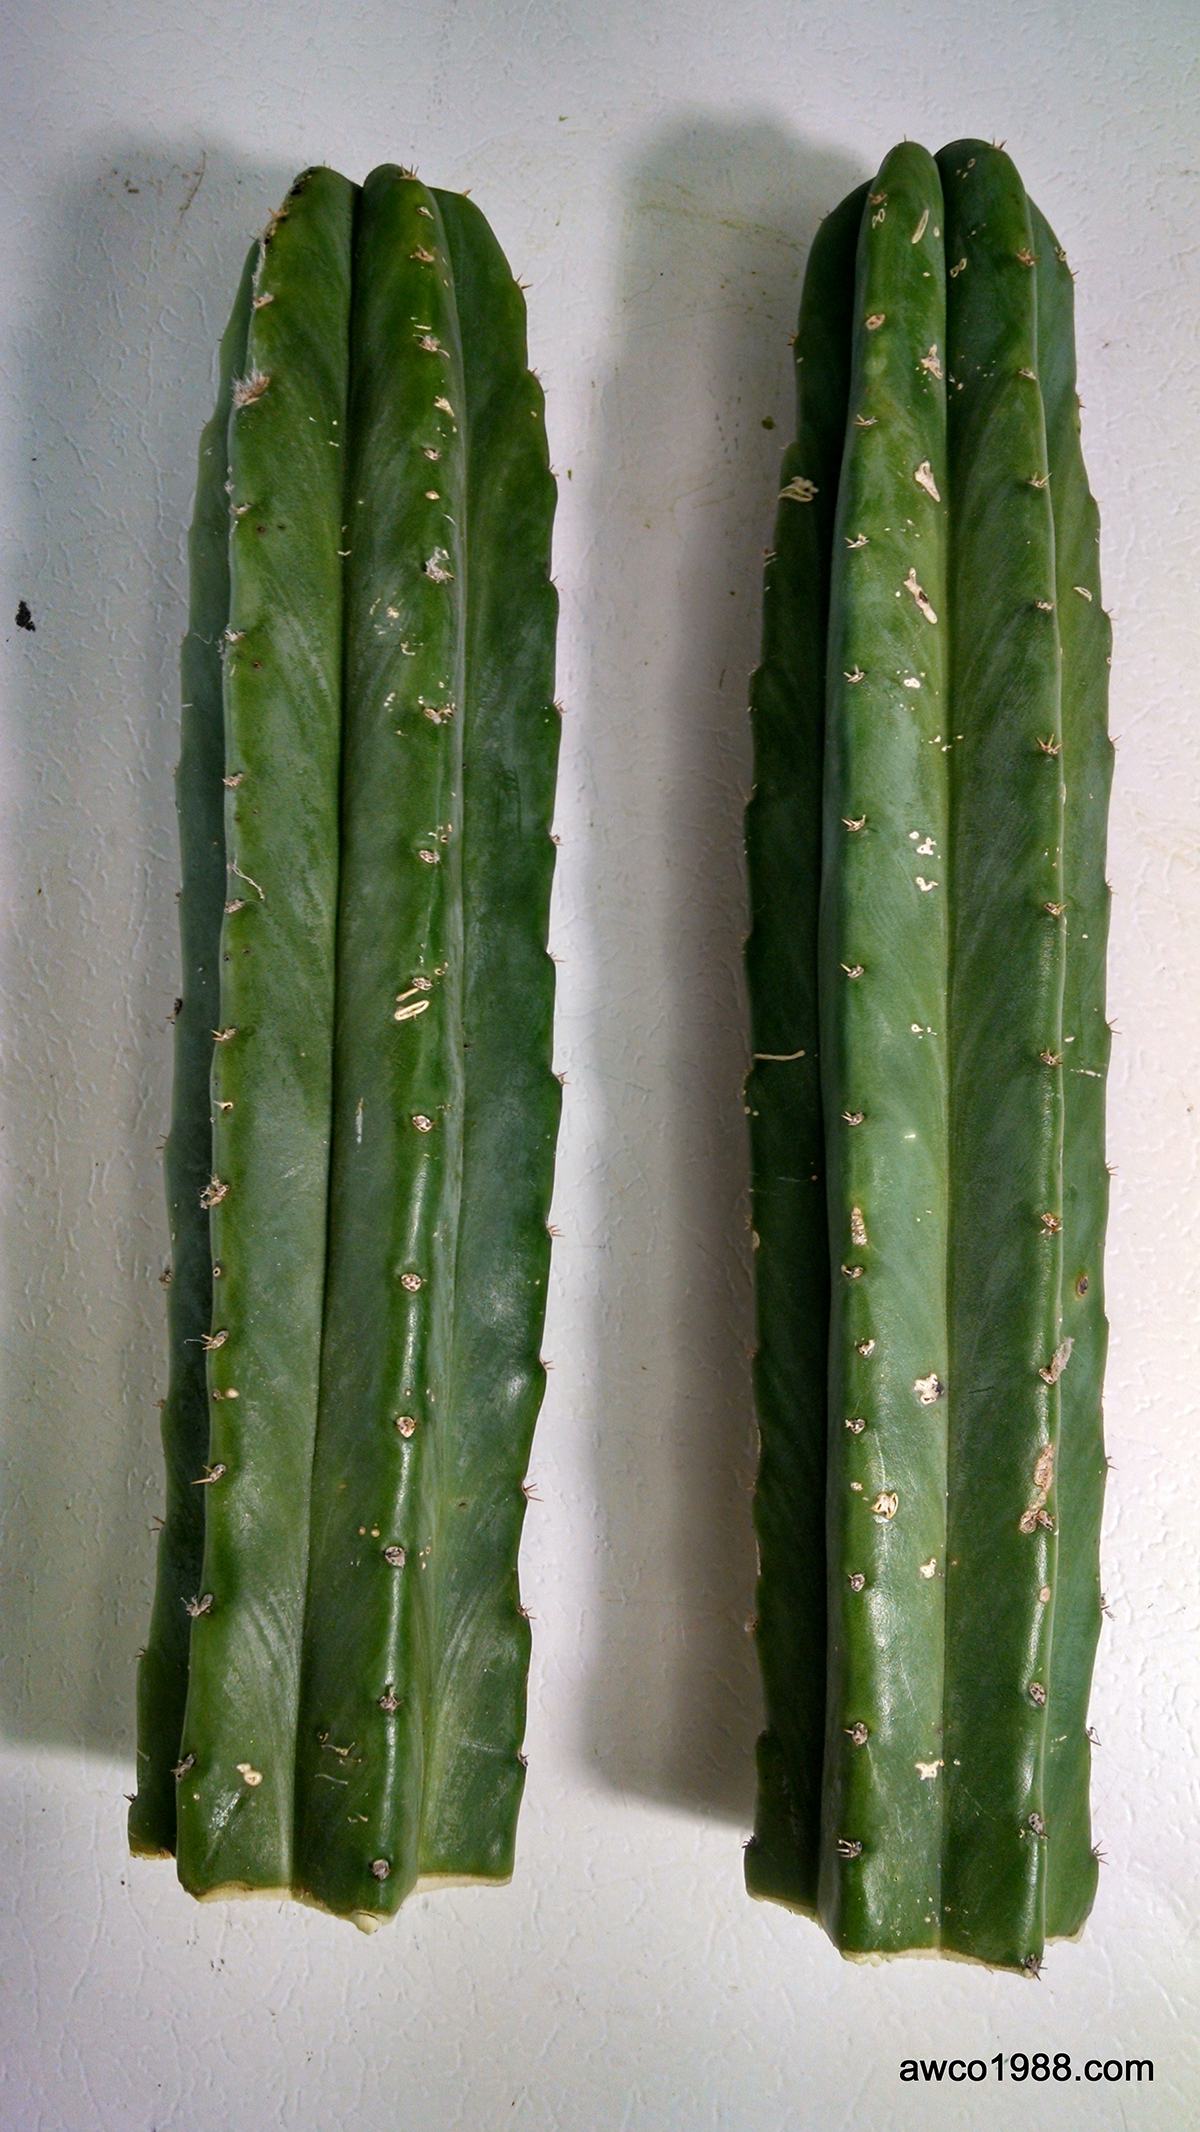 SAN PEDRO CACTUS SALES » Two Medium Diameter San Pedro Cactus Tip ...